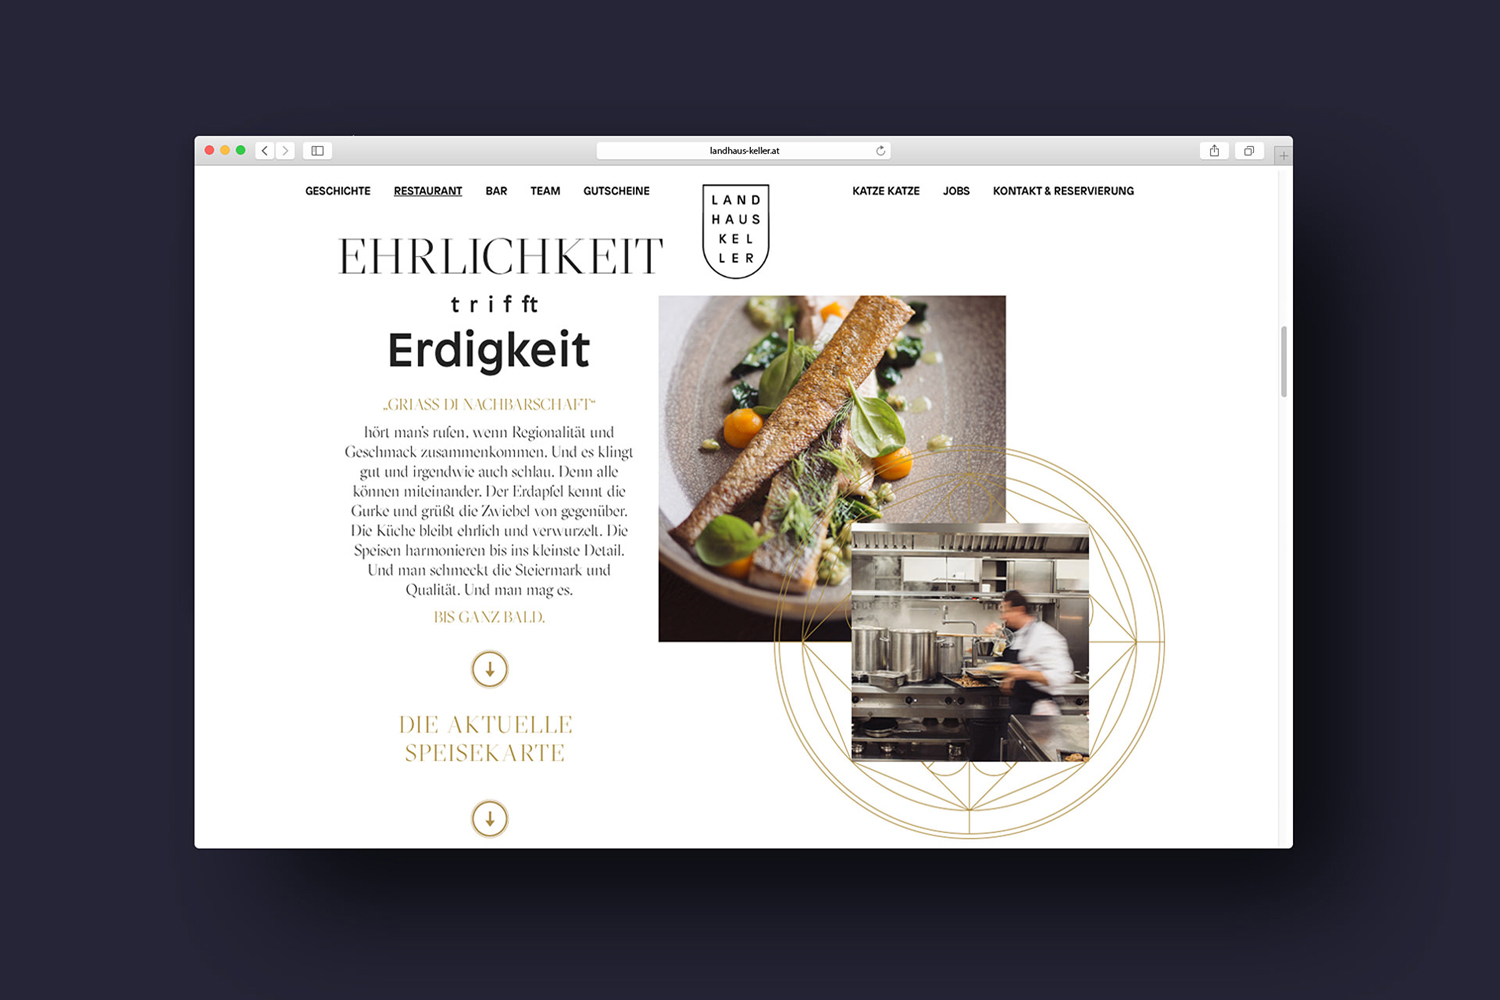 Brand identity and website by Austrian graphic design studio Seite Zwei for Graz-based restaurant Landhaus Keller. 